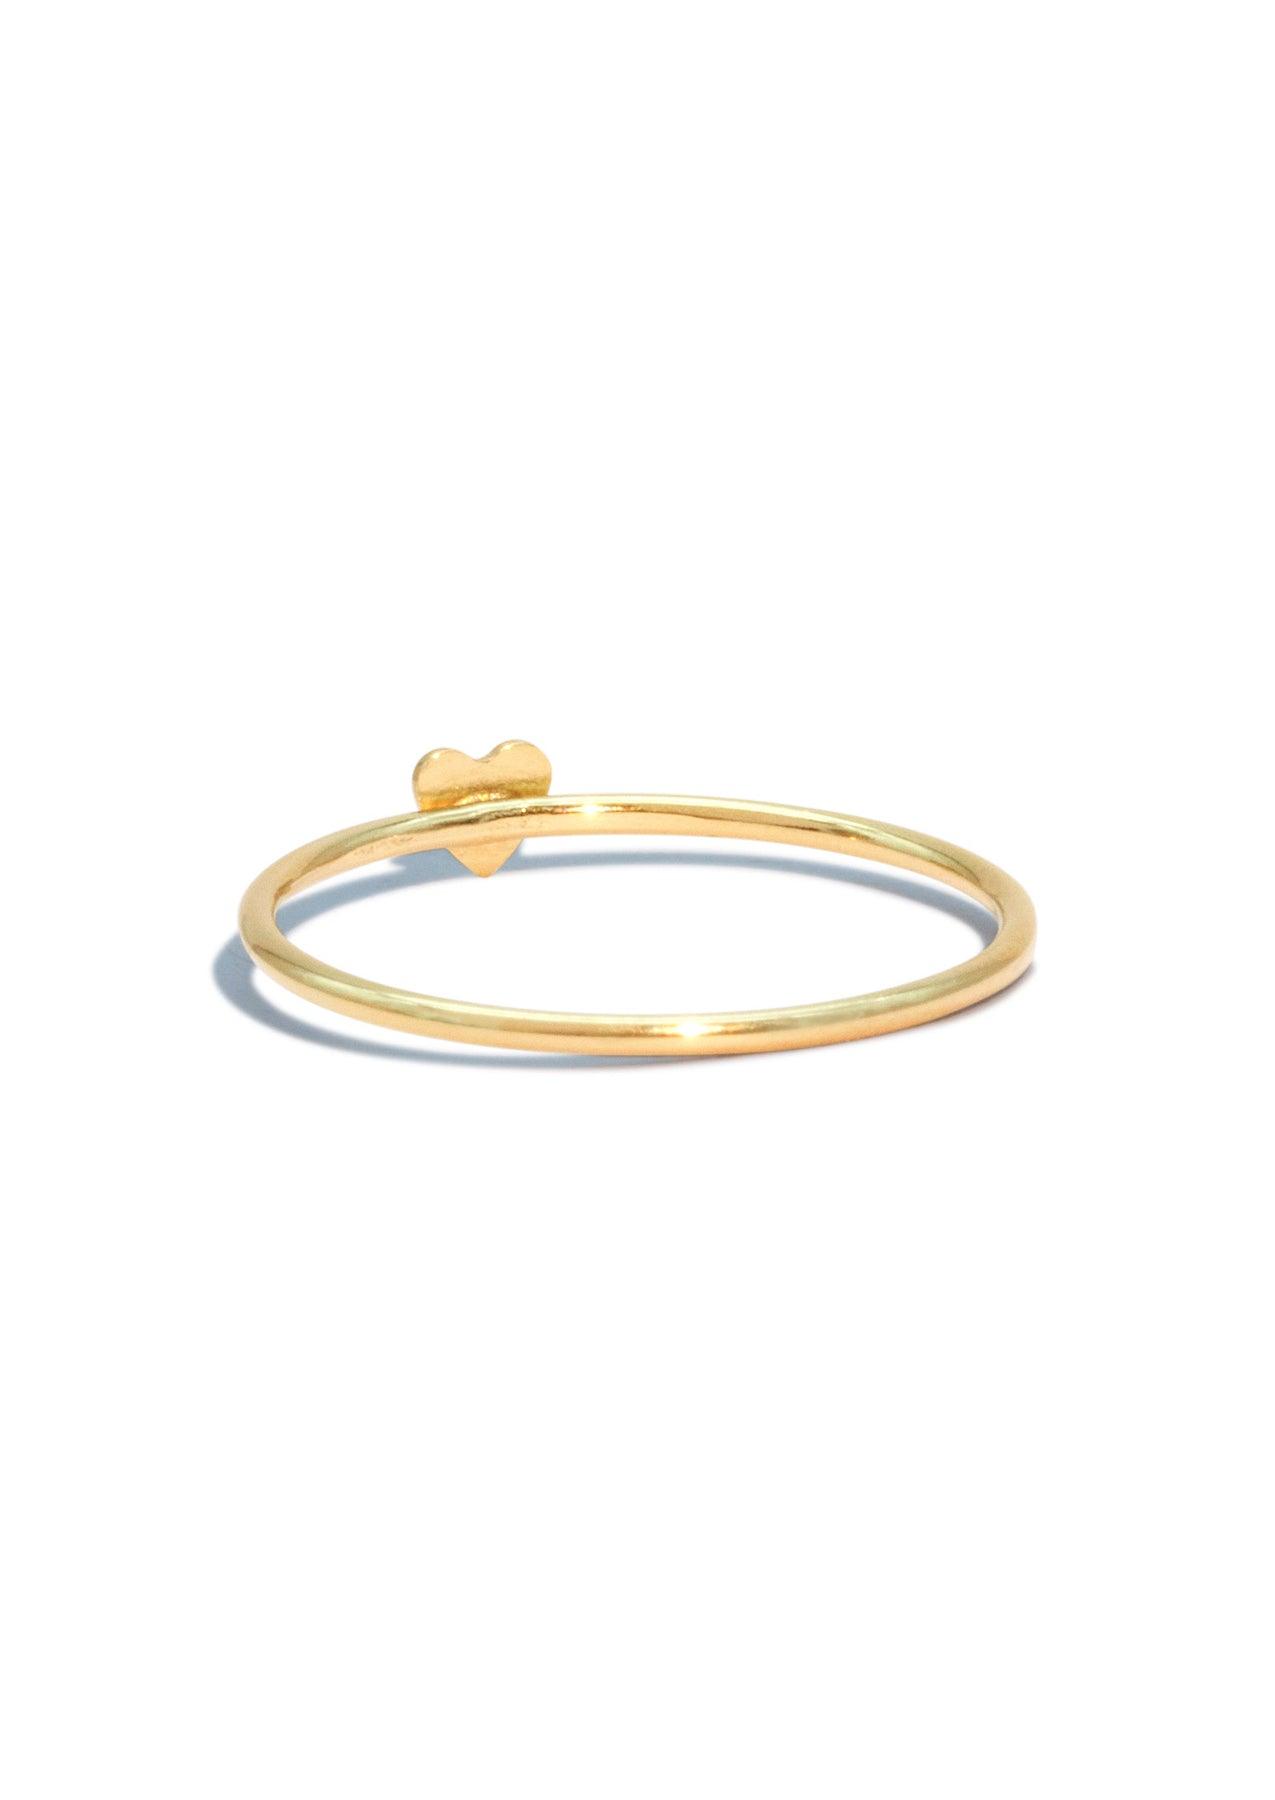 The Gold Teeny Heart Ring